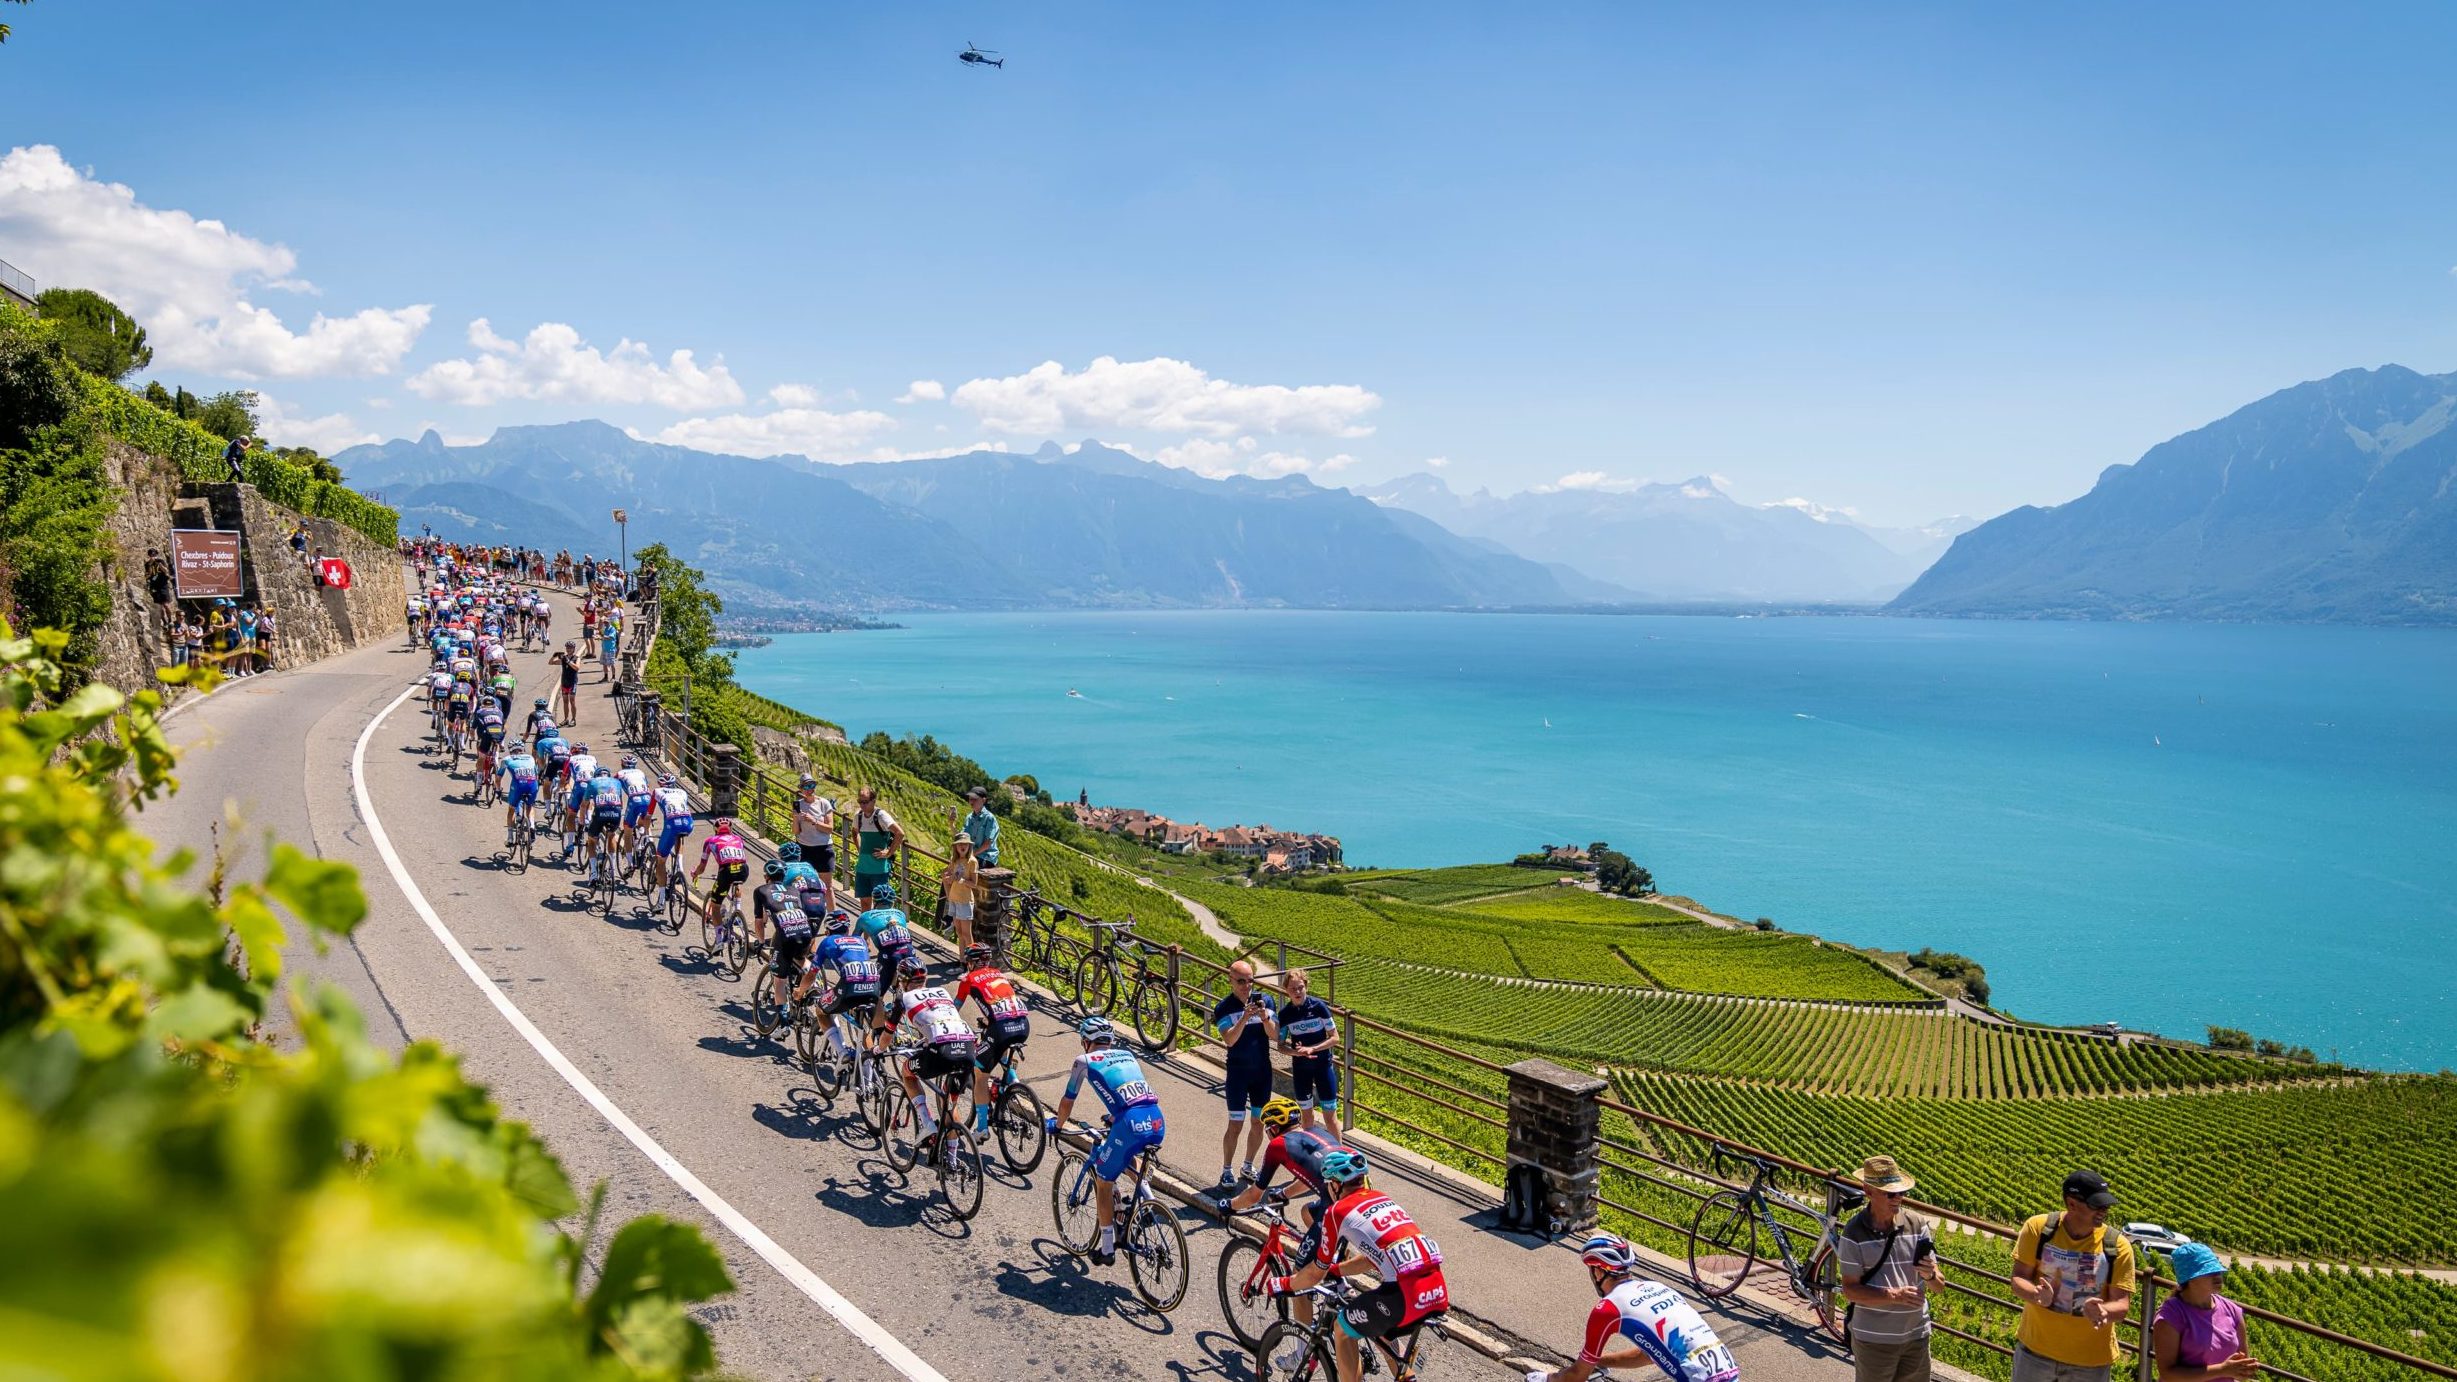 Le Tour de France 2022 passe dans le canton de Vaud à travers Lausanne, Lavaux et Aigle